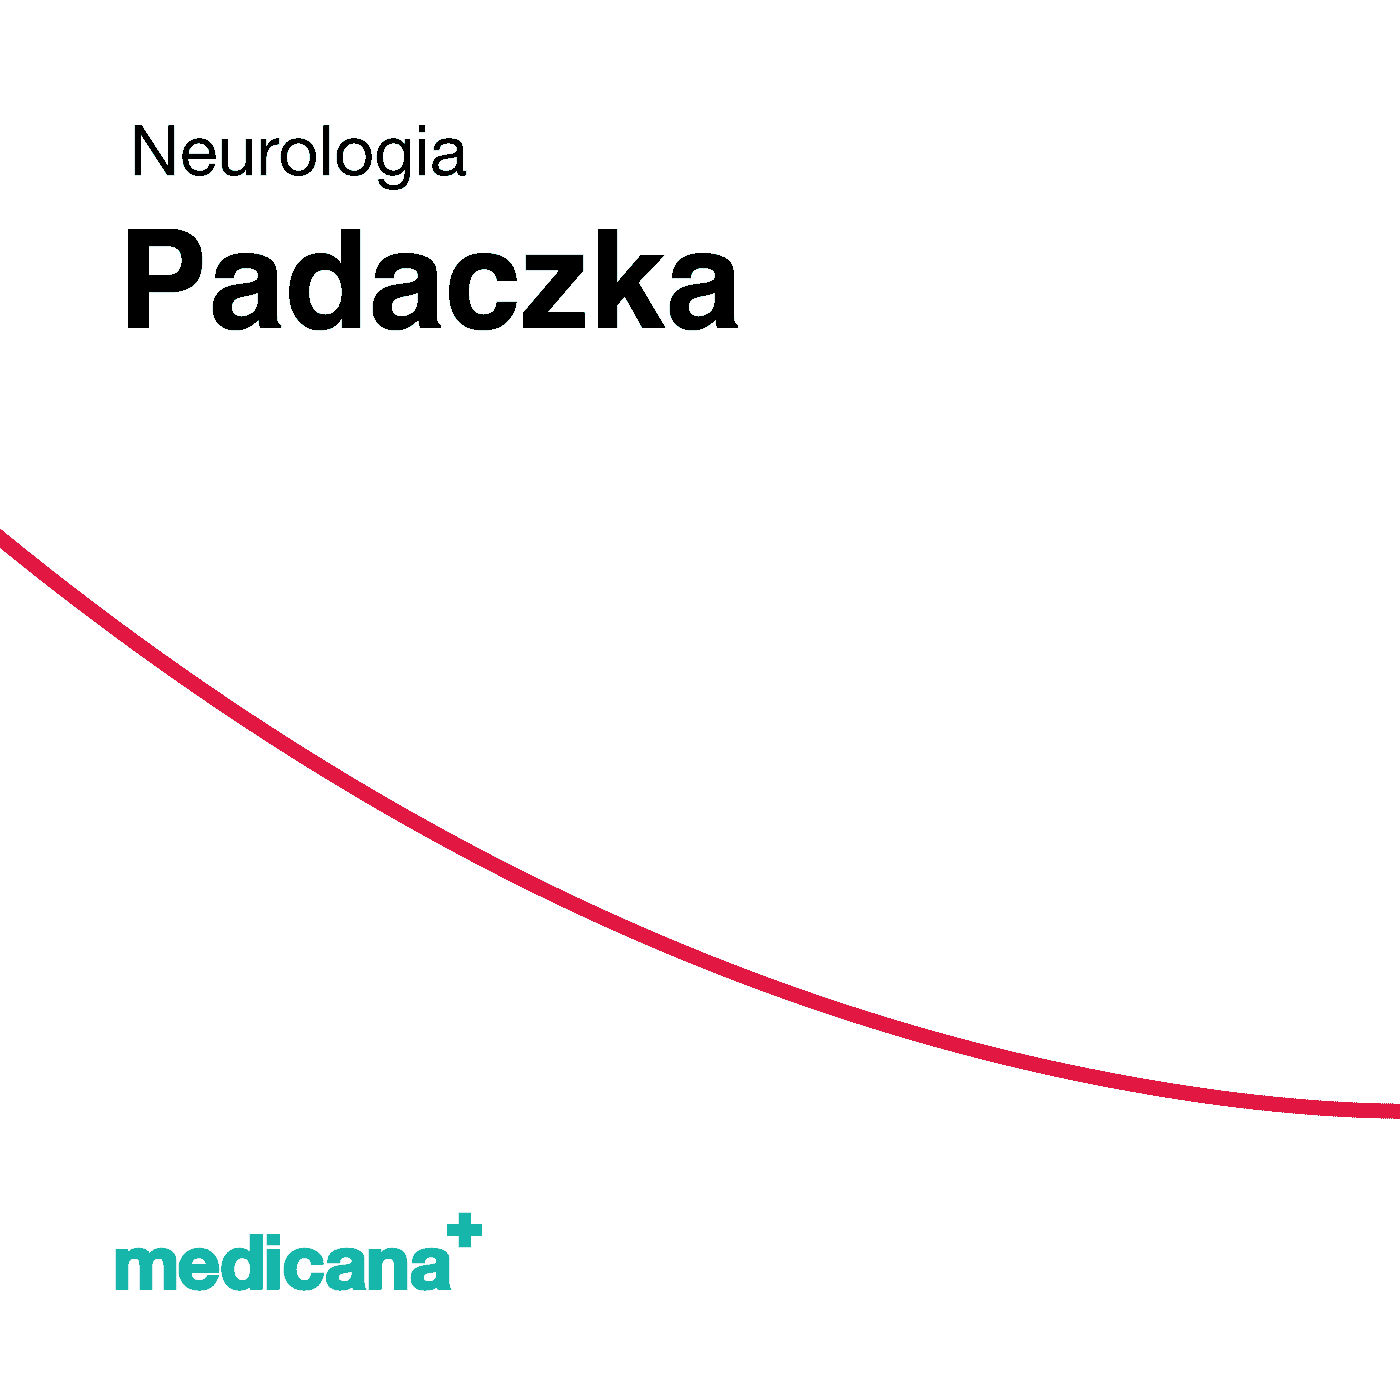 Grafika, białe tło z czerwoną kreską, czarnym napisem Neurologia - Padaczka / Epilepsja i logo Medicana Centrum Terapii Medyczna Marihuana w lewym dolnym rogu.